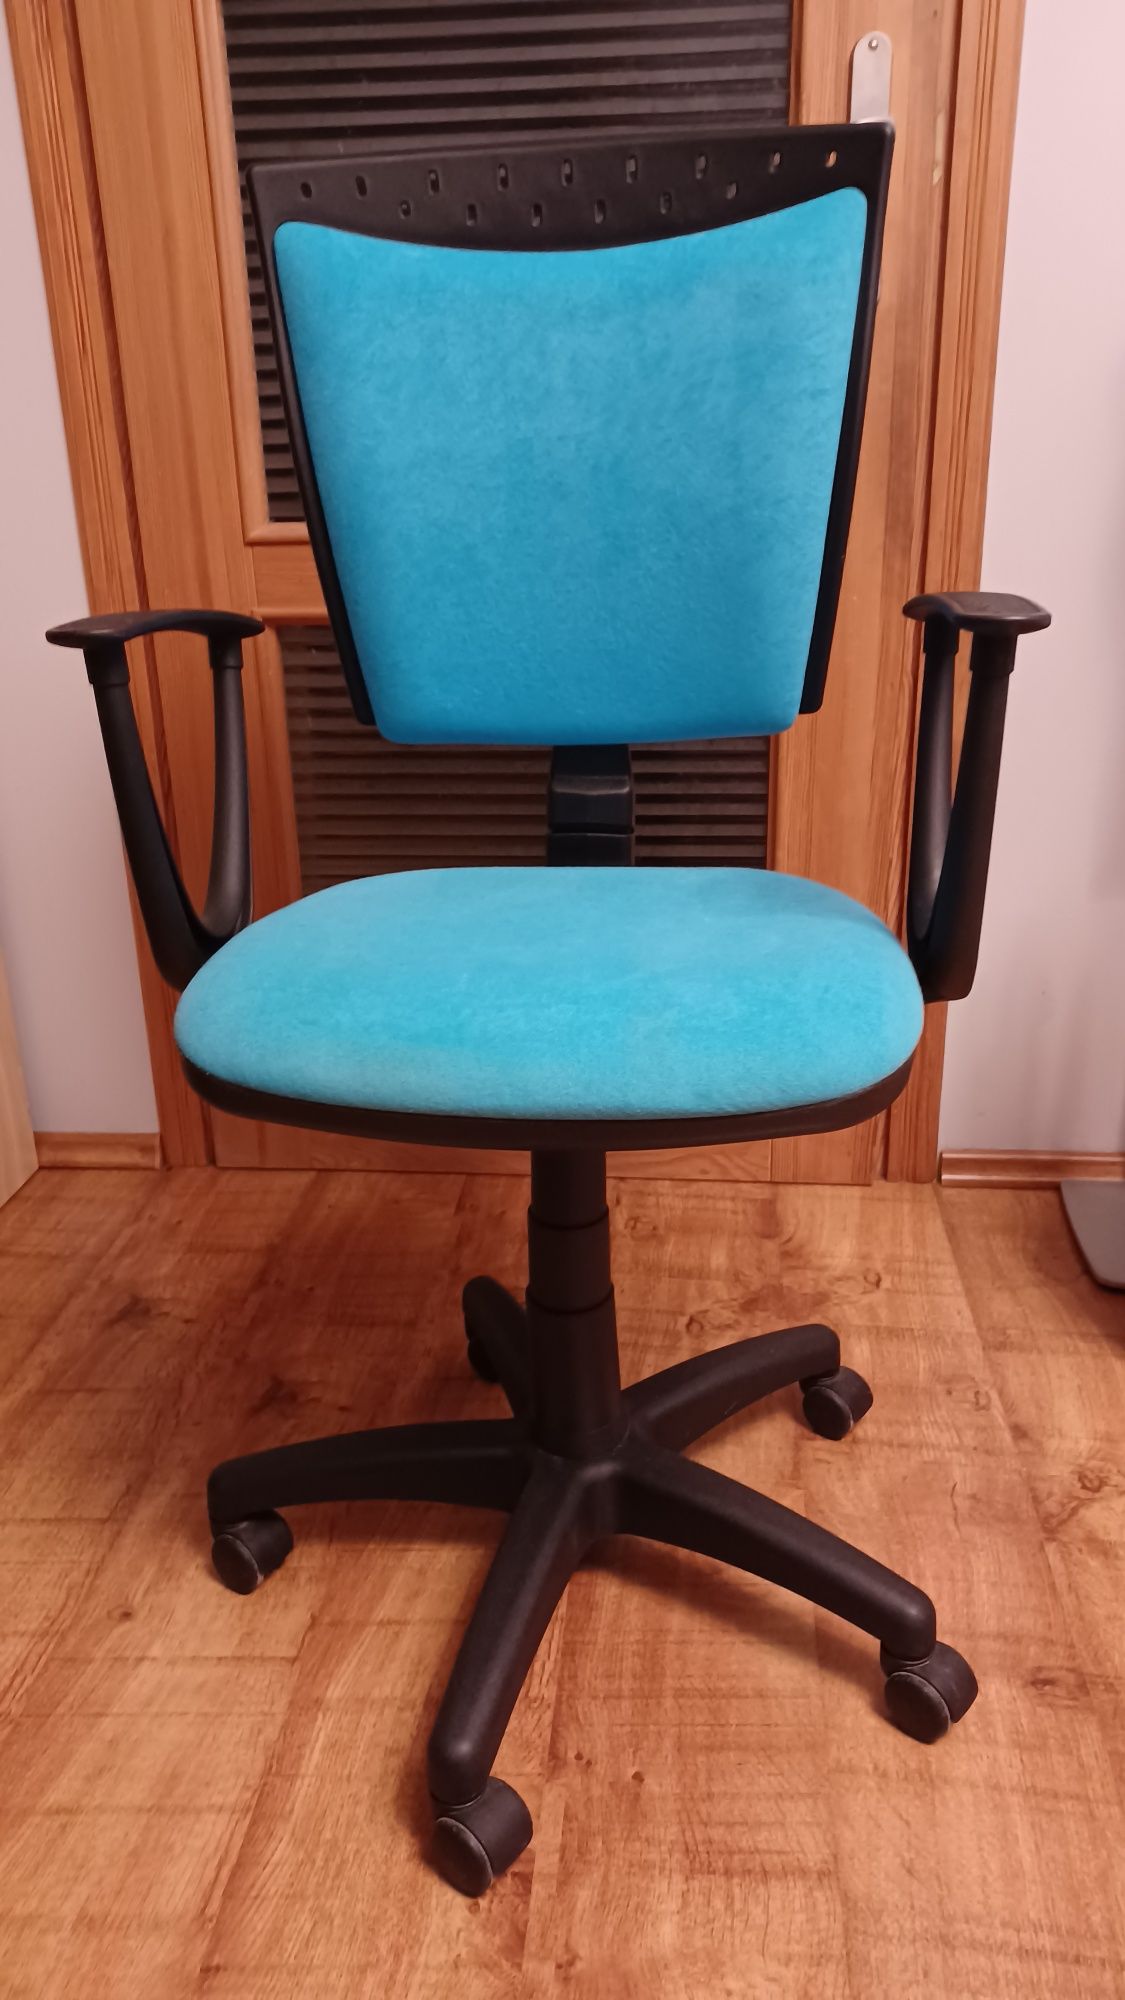 Krzesło do biurka,kolor niebieski (błękitny)